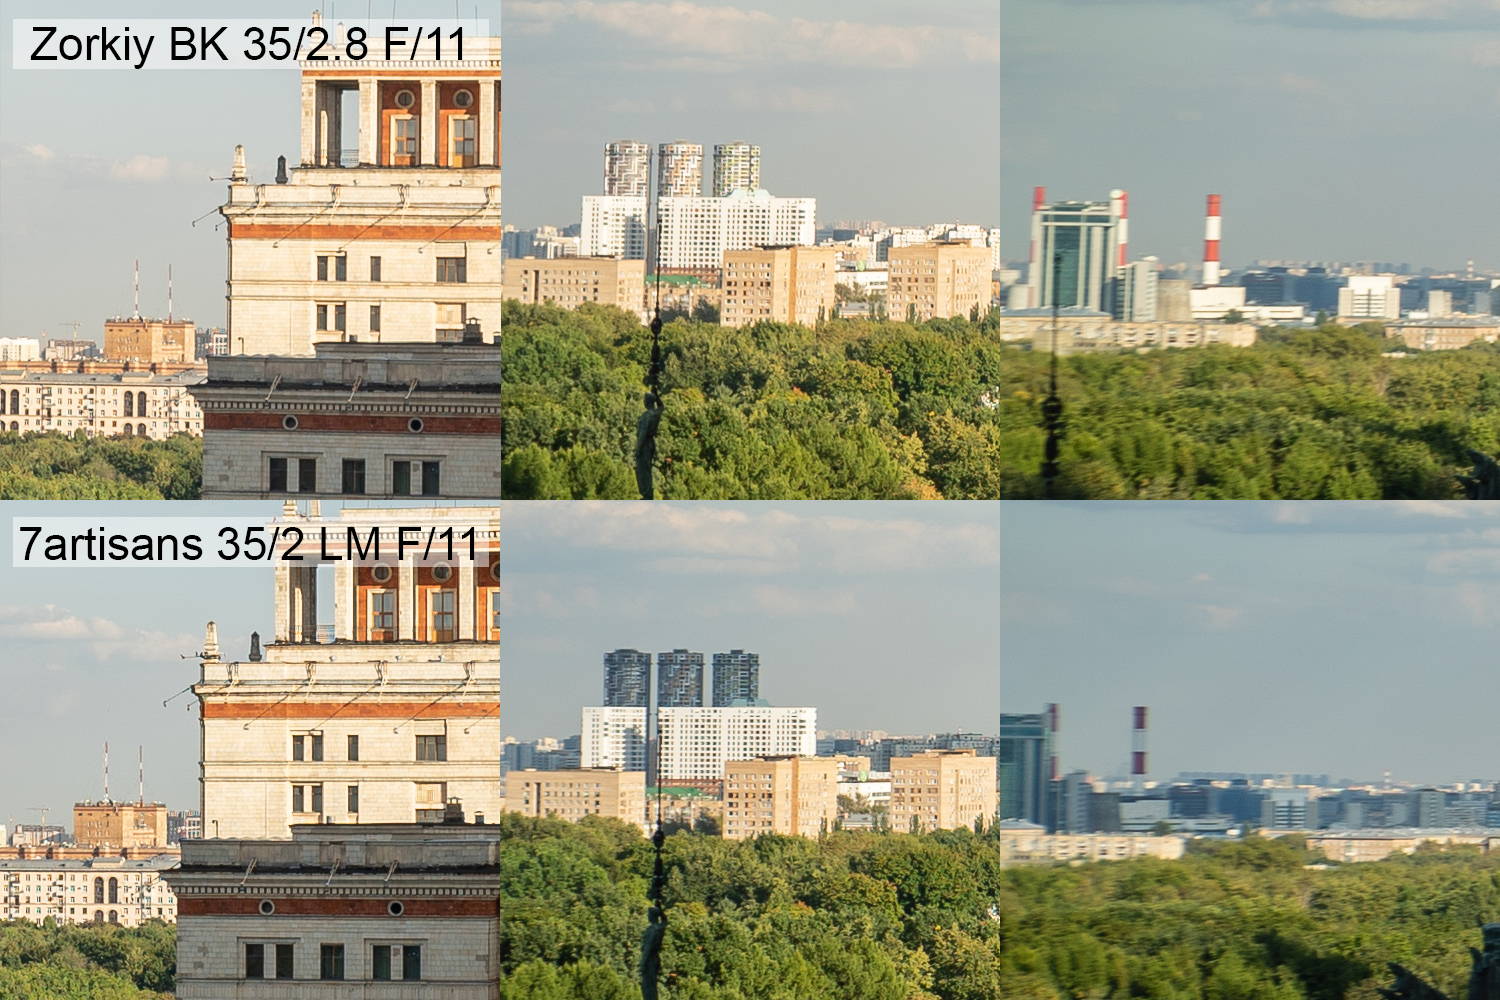 Bijgesneden opnames gemaakt met 7artisans 35/2 en Zorkiy BK 35/2.8 bij f/11.